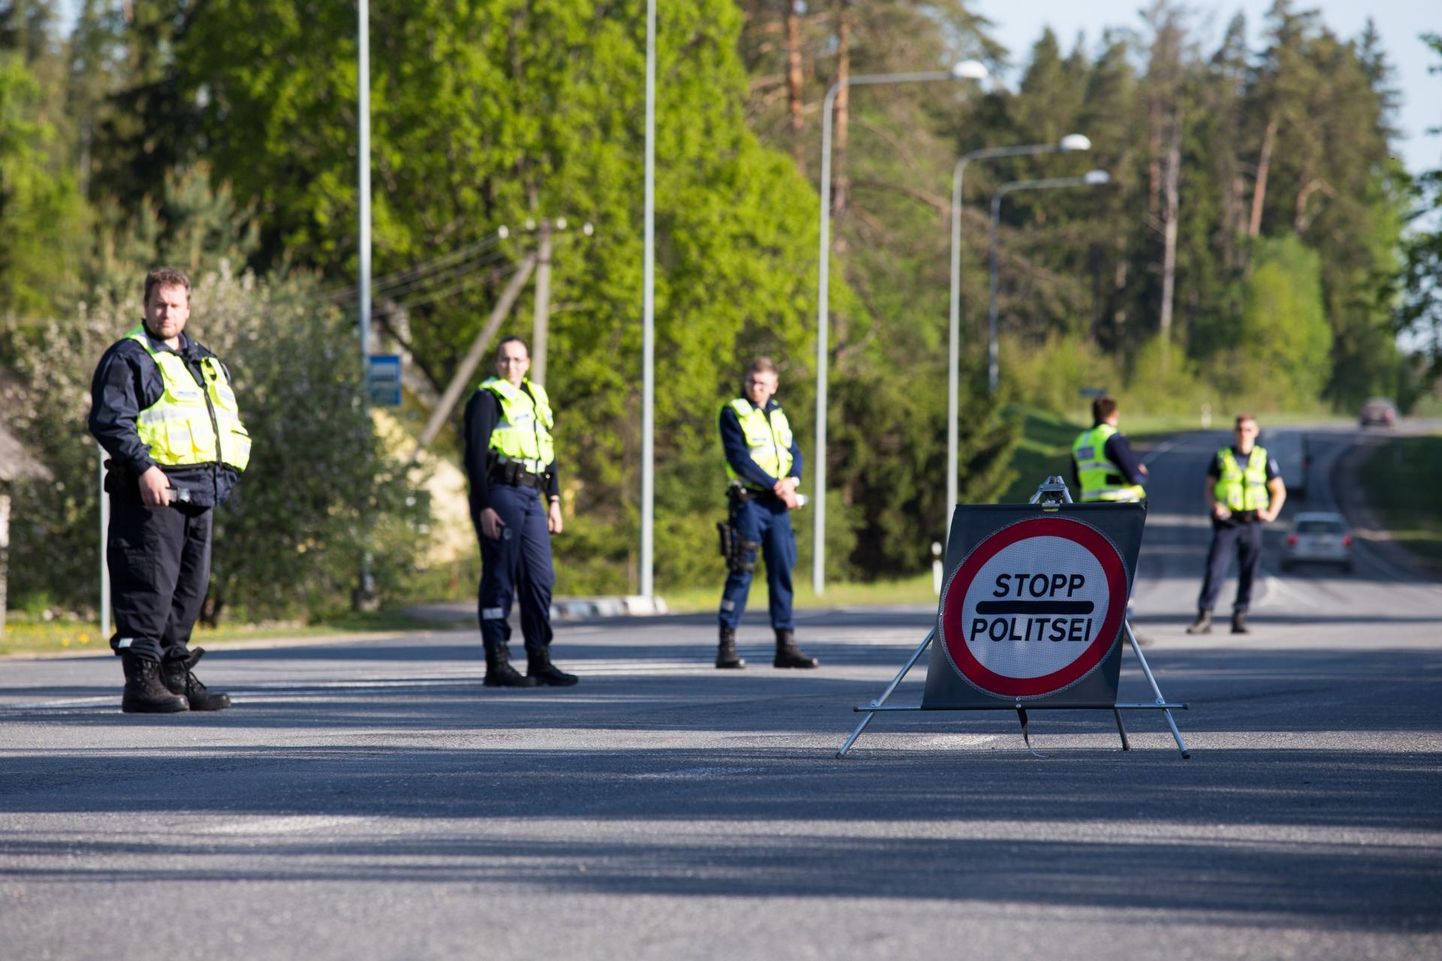 Sel nädalavahetusel oli Viljandimaal politseivormis inimesi tööl rohkem kui tavaliselt ning alkomeetrisse pandi puhuma keskmisest neli-viis korda rohkem autojuhte.